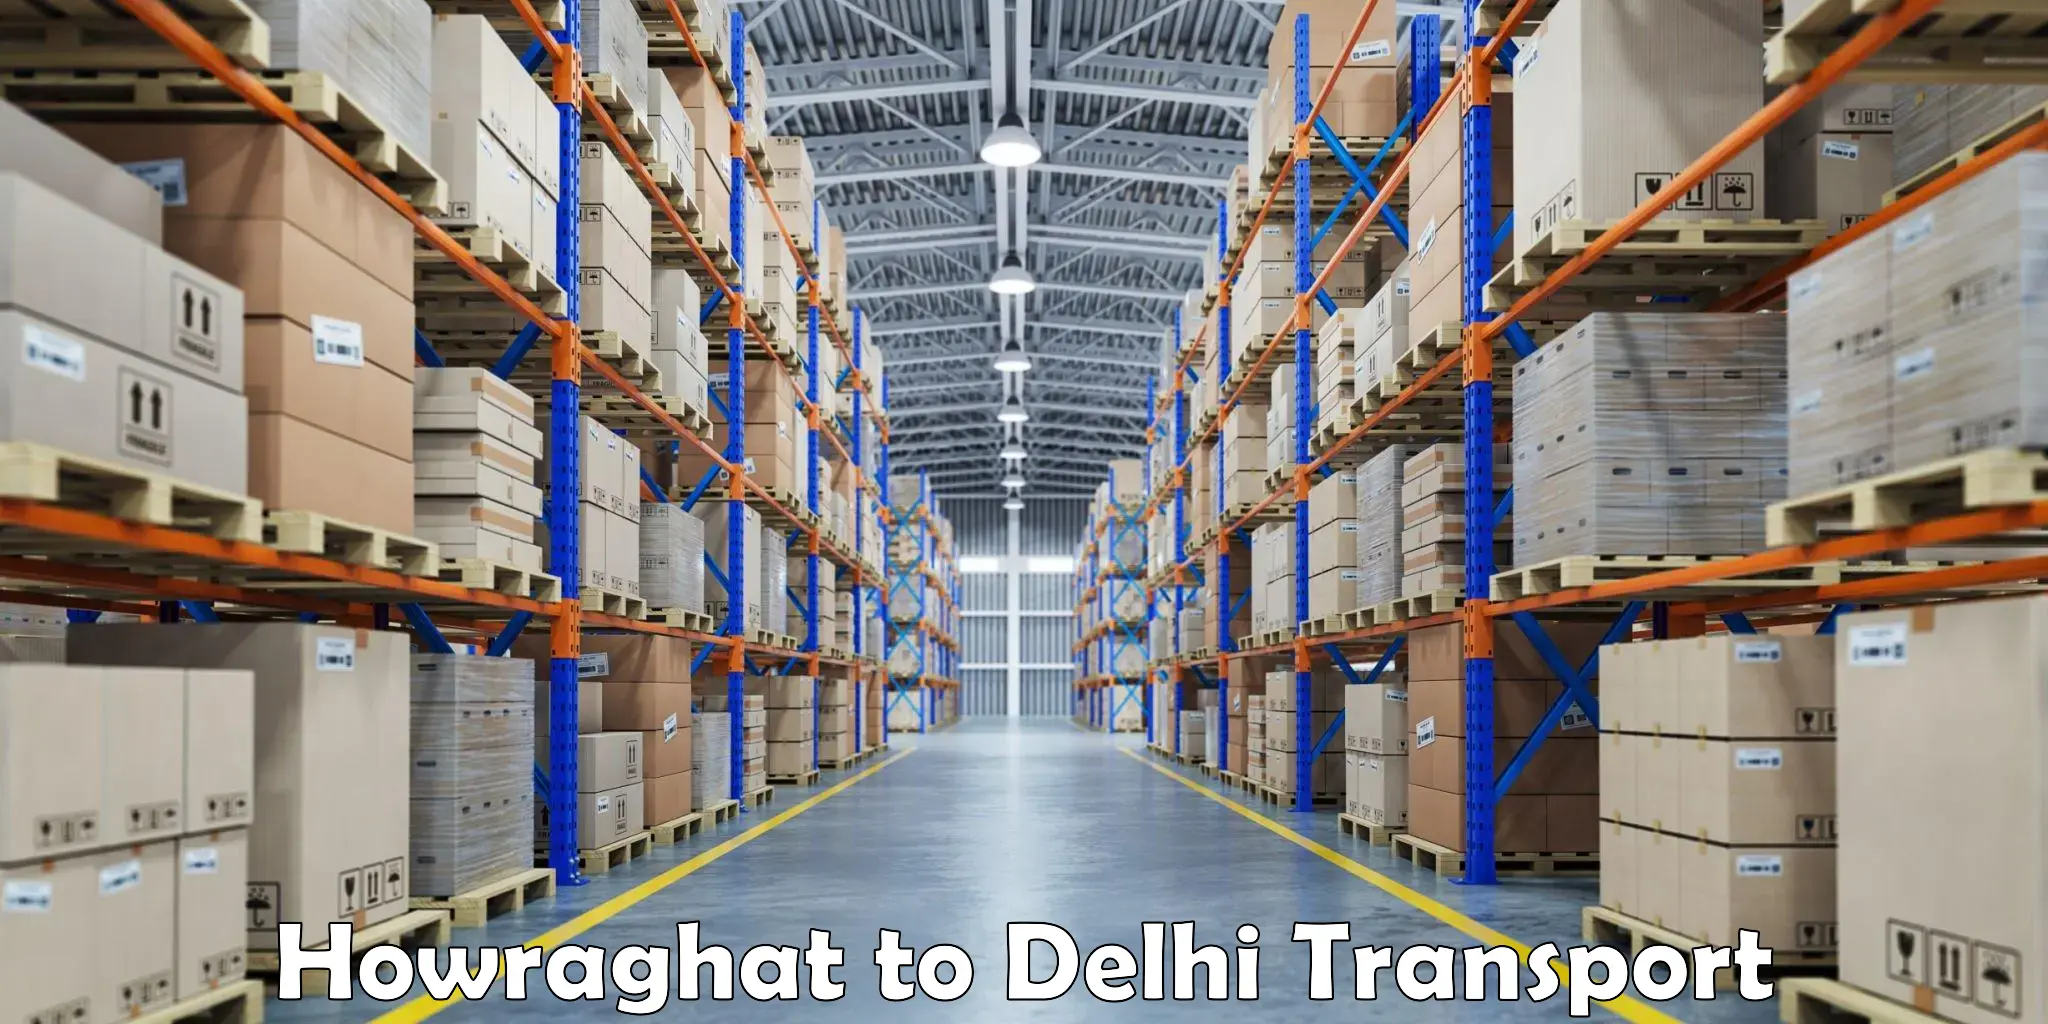 Intercity transport Howraghat to Delhi Technological University DTU